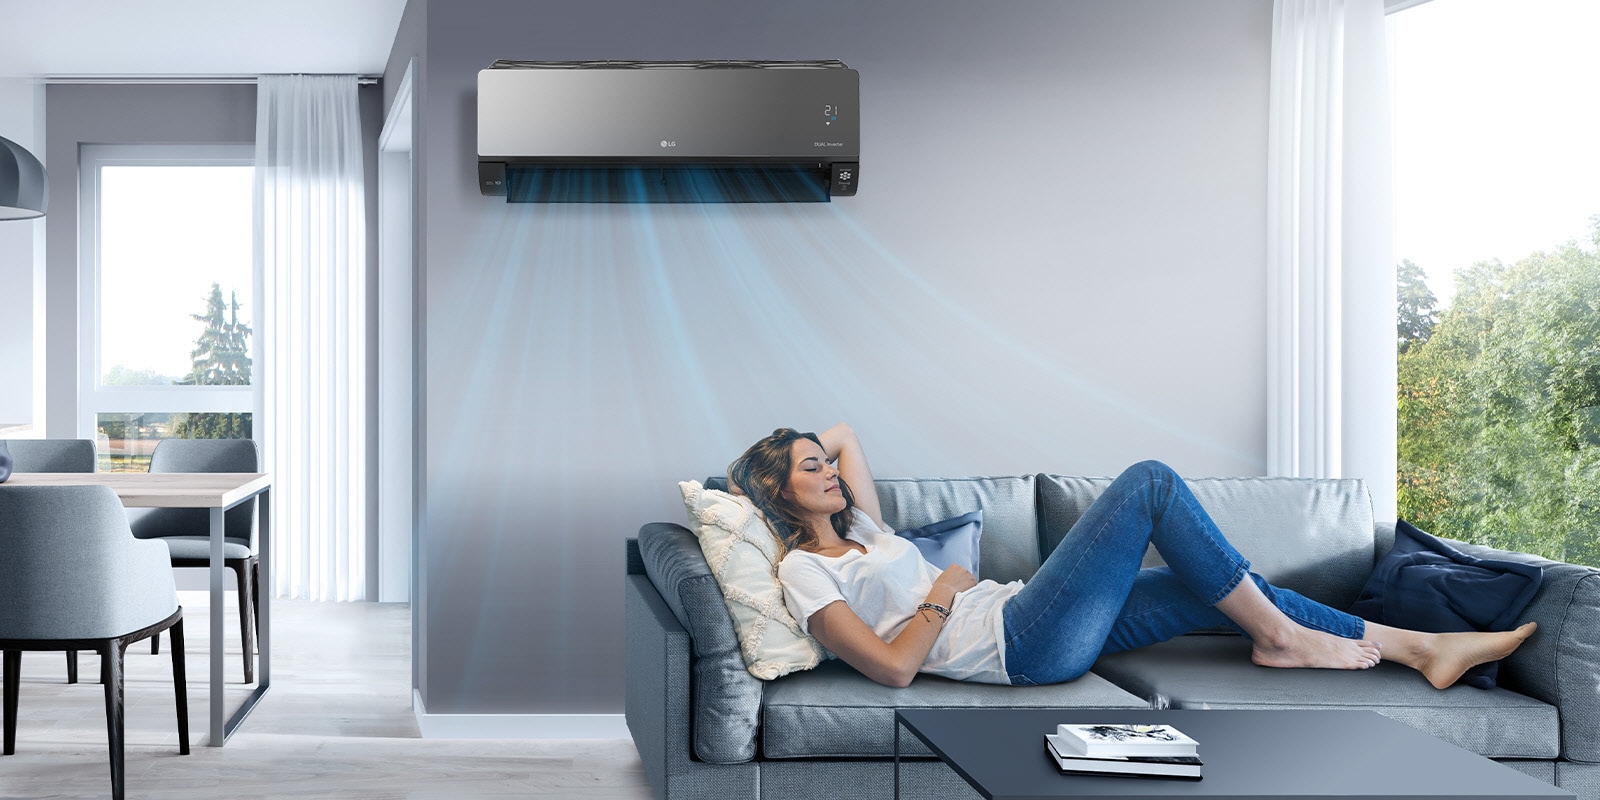 Žena se opušta na kauču u dnevnoj sobi dok je LG klima uređaj postavljen iznad nje na zidu. Plavi protok vazduha na slici naznačava da je klima uređaj uključen i da hladi prostoriju.